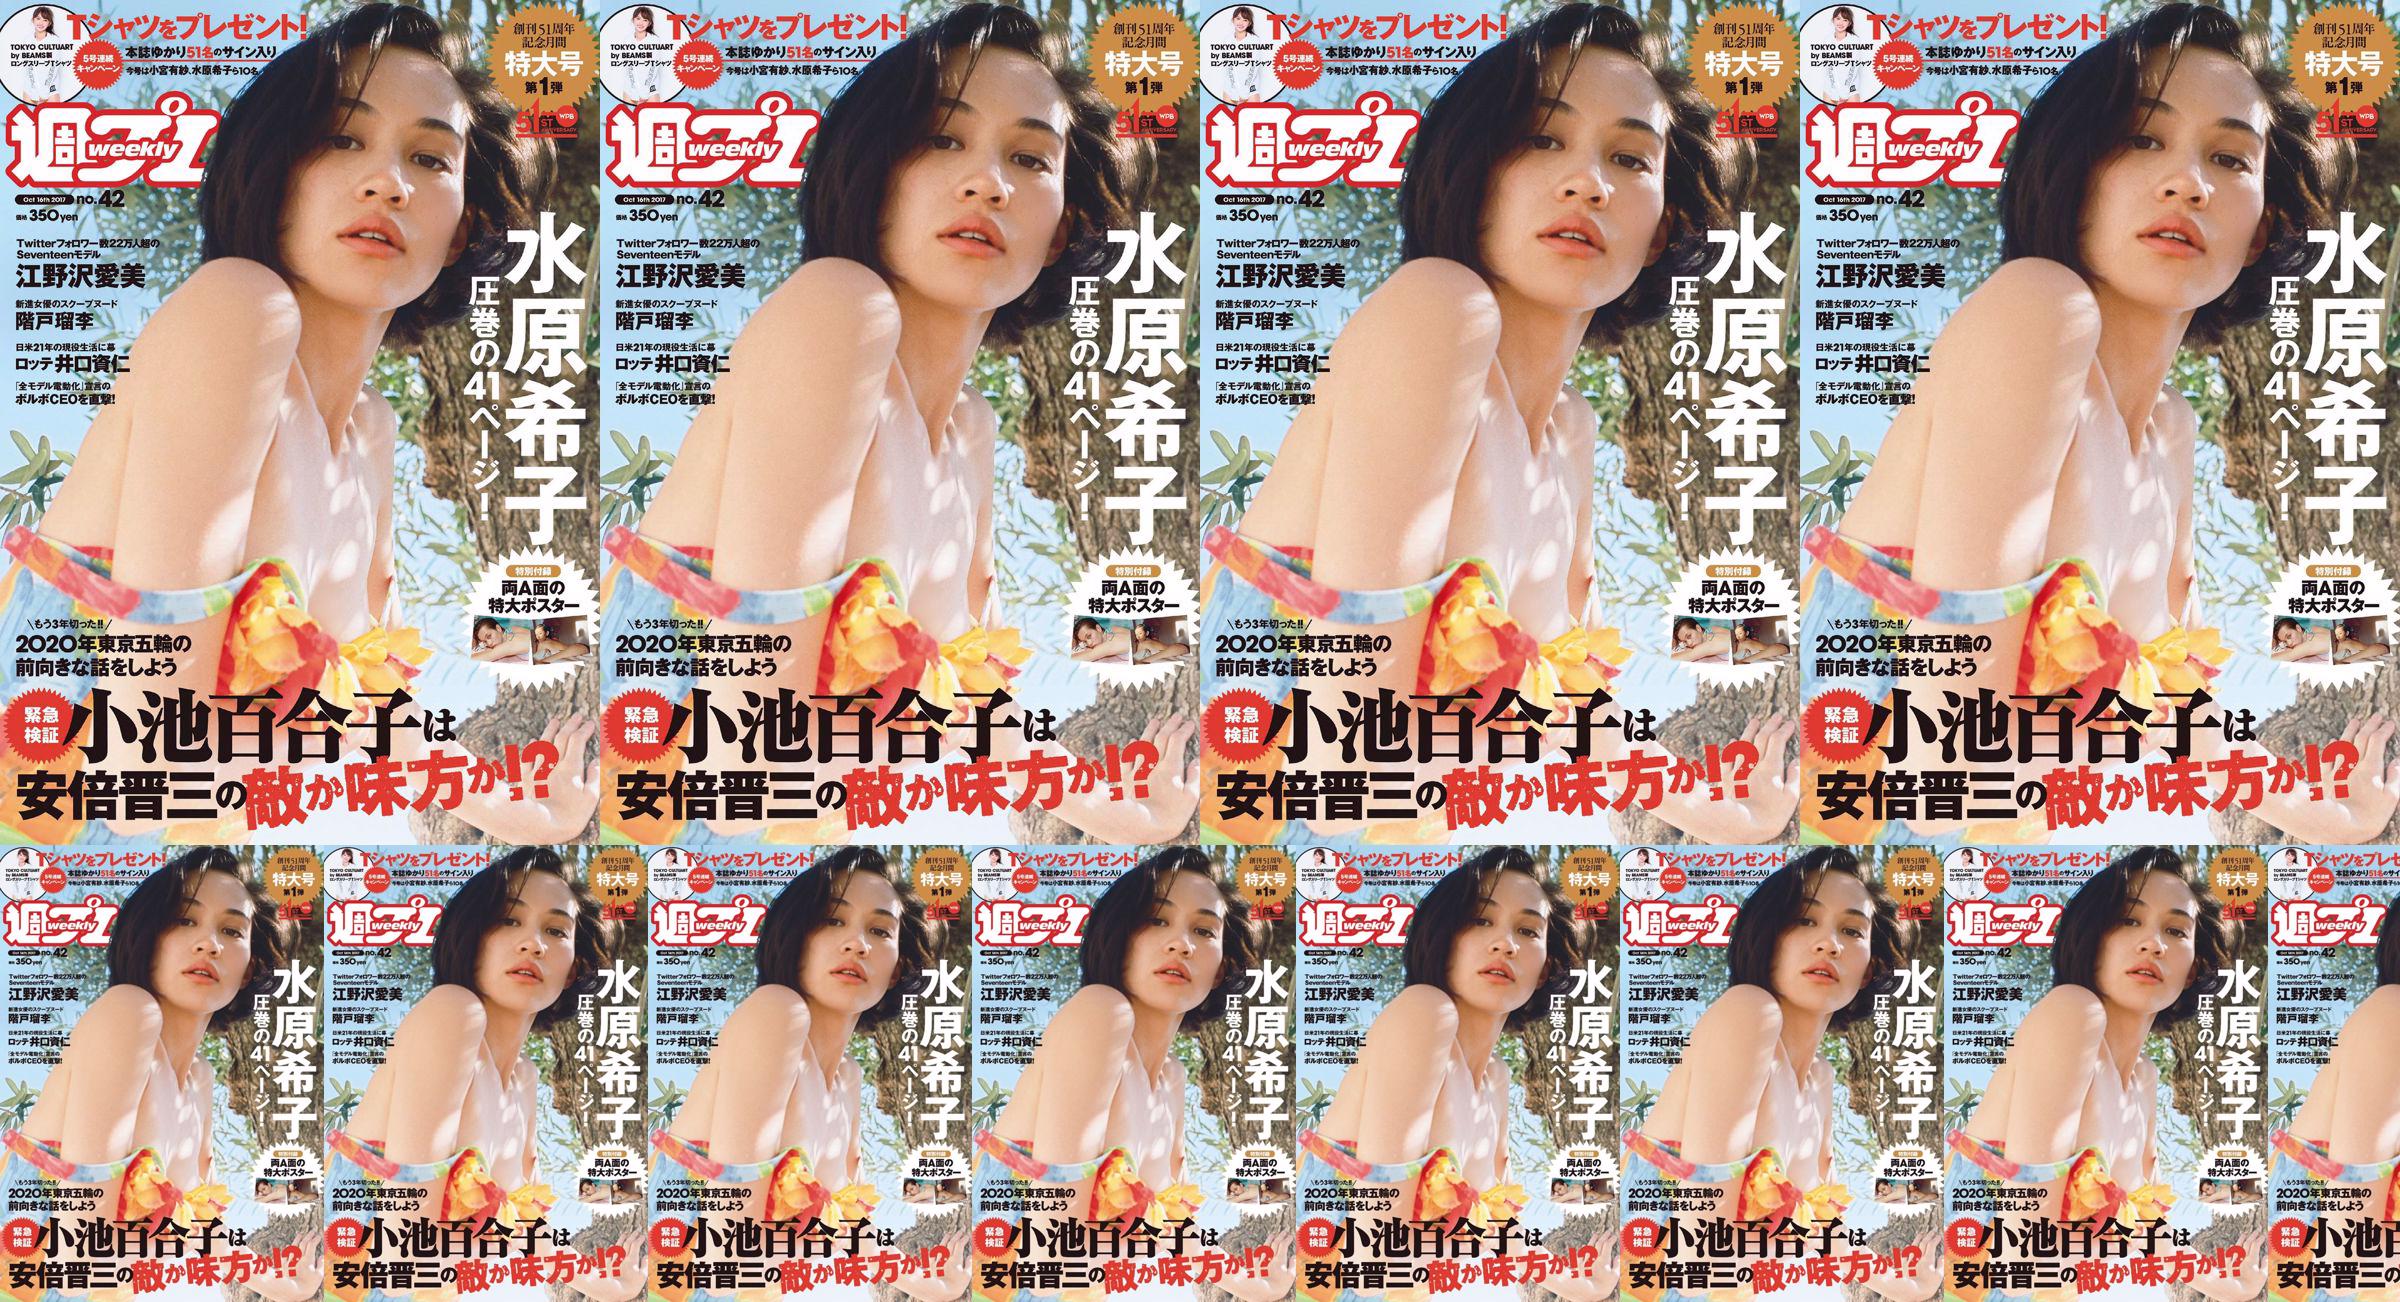 Kiko Mizuhara Manami Enosawa Serina Fukui Miu Nakamura Ruri Shinato [Weekly Playboy] 2017 No.42 Photo Magazine No.f5bc14 Pagina 1